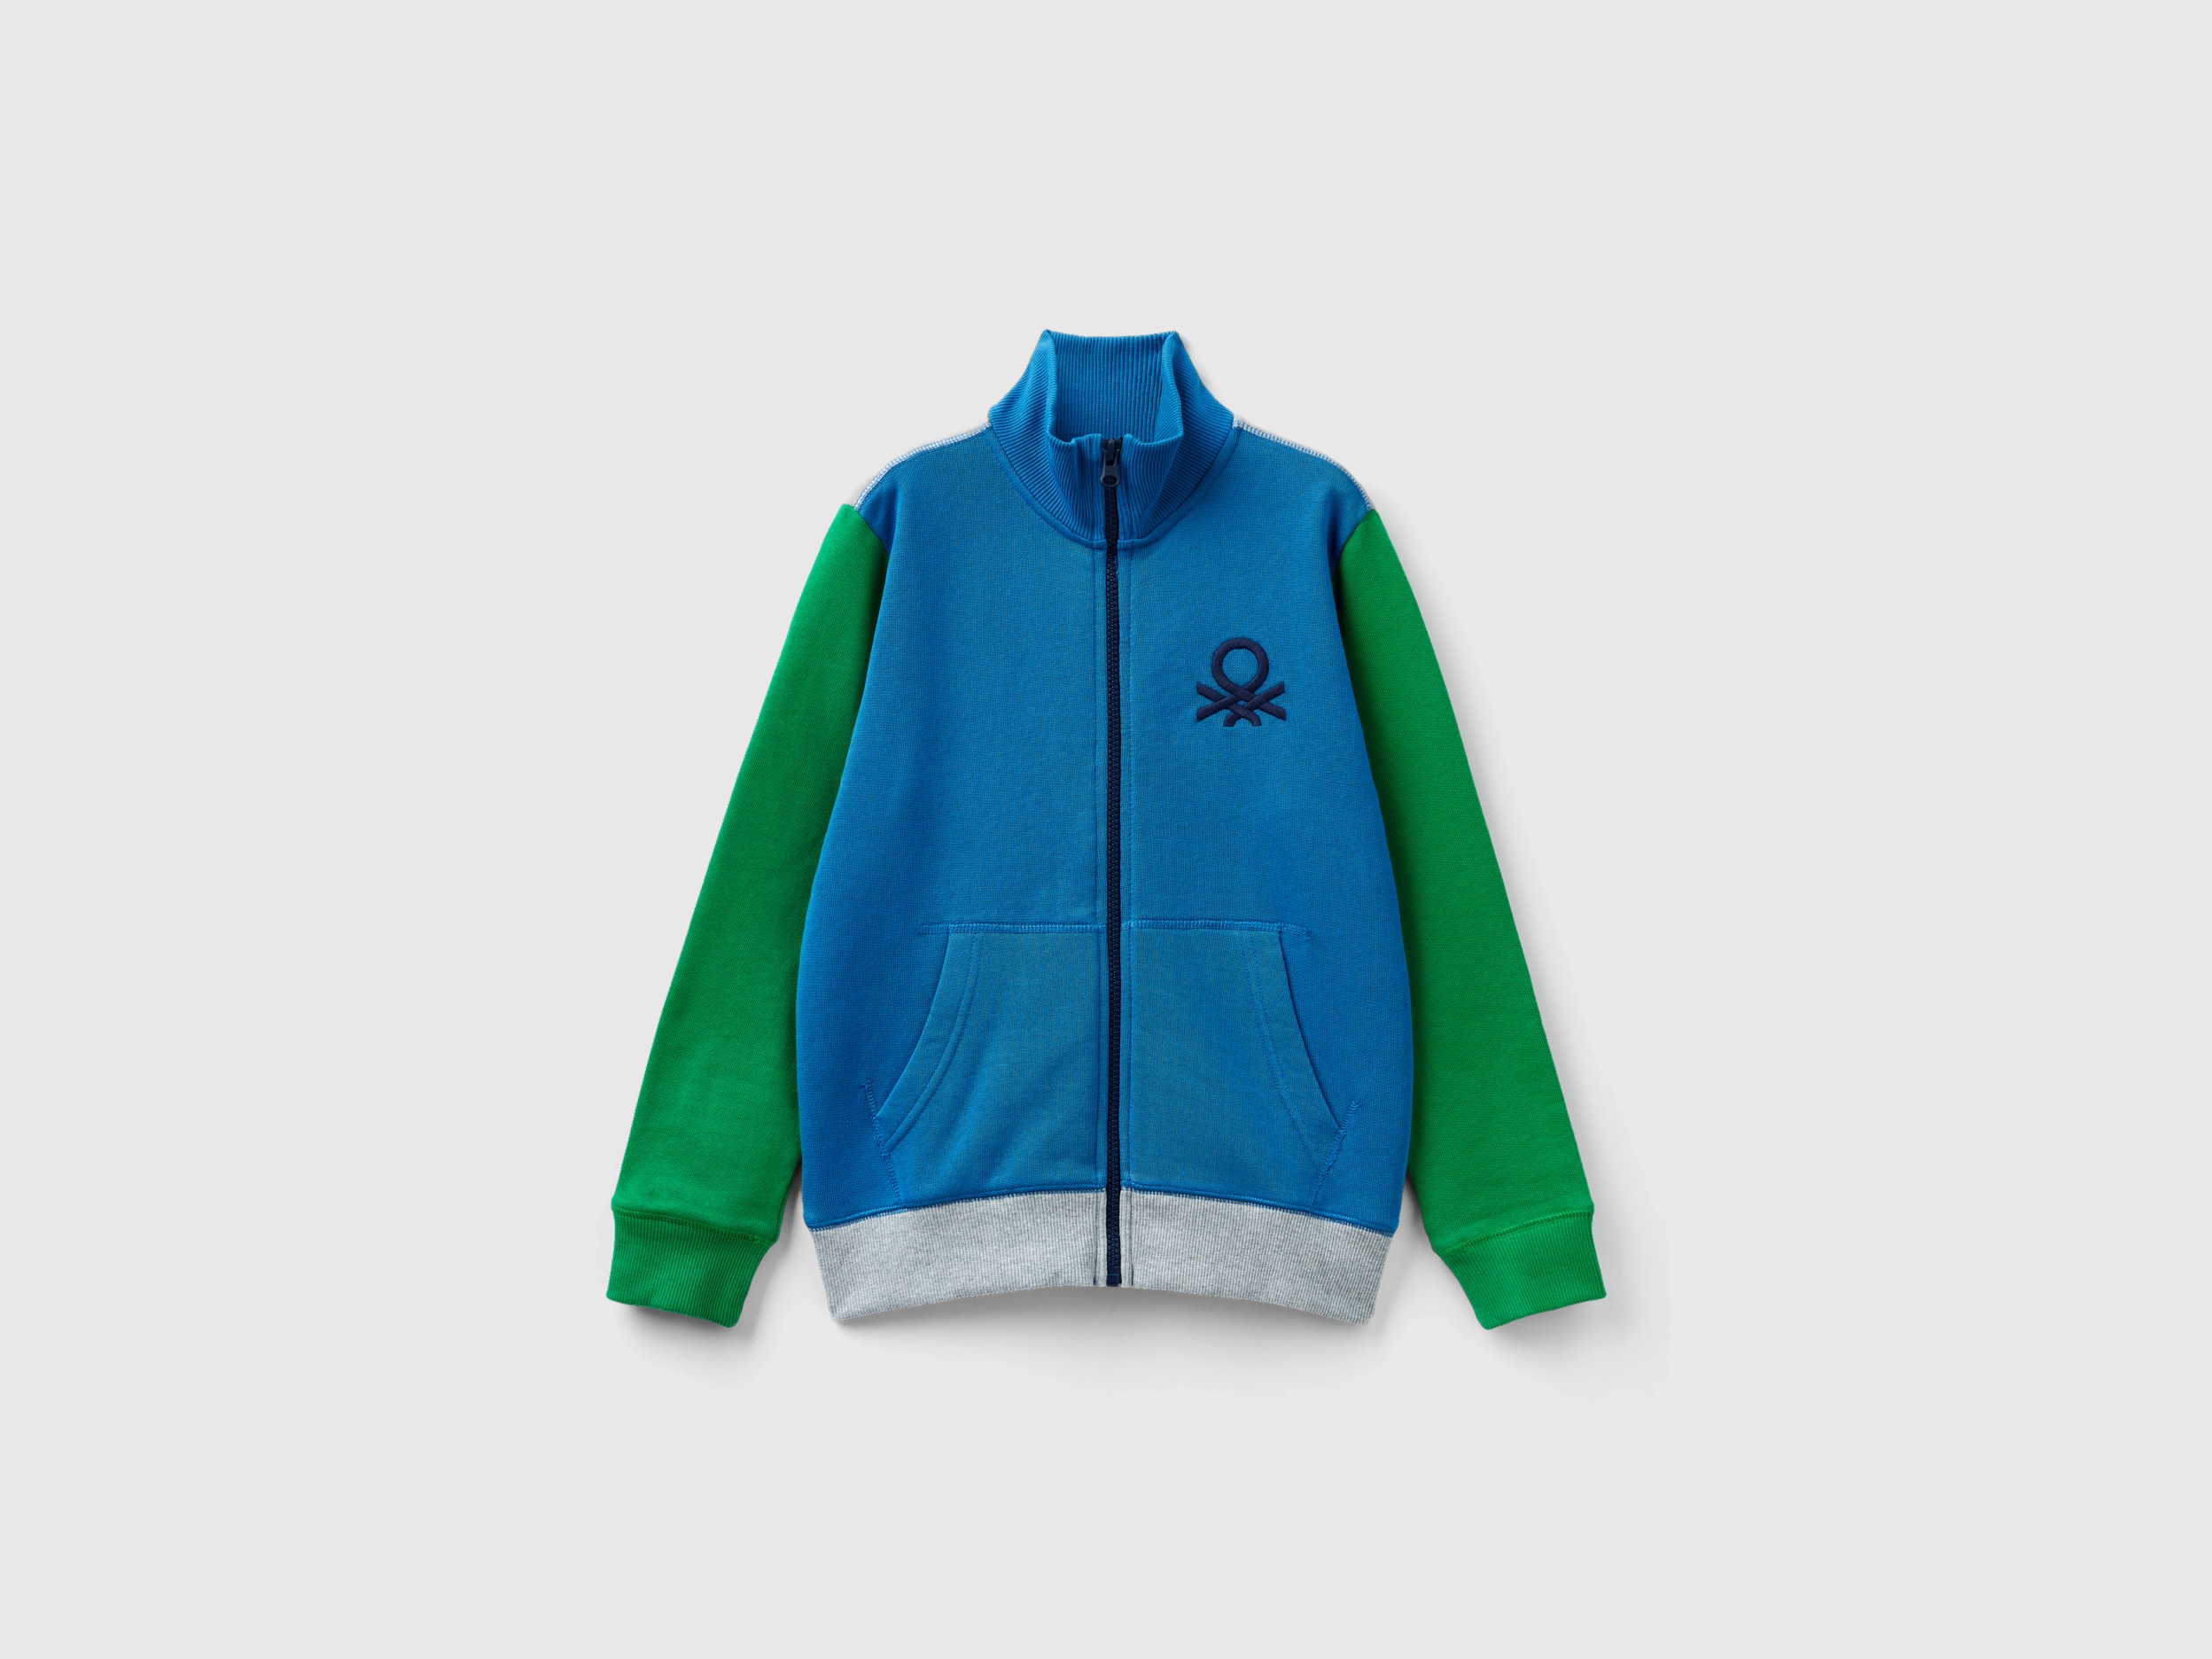 Benetton, Pure Cotton Sweatshirt With Zipper, size M, Multi-color, Kids